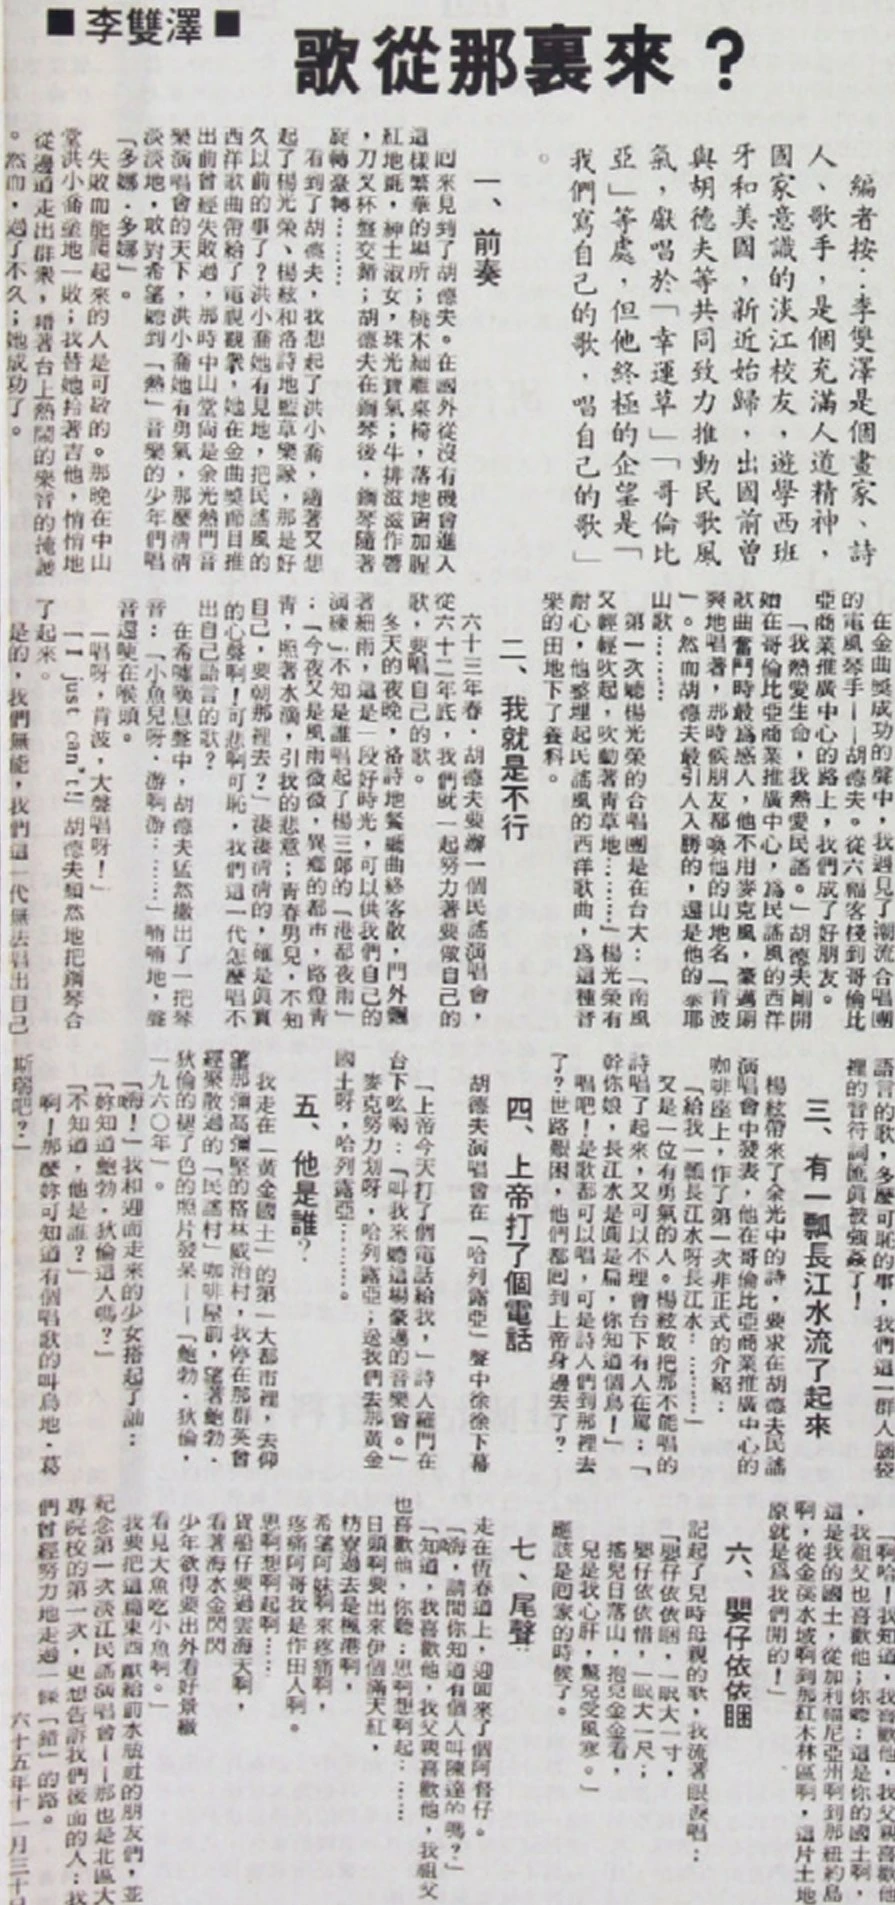 李雙澤，〈歌從哪裏來？〉，《淡江週刊》662期。1976.12-圖片